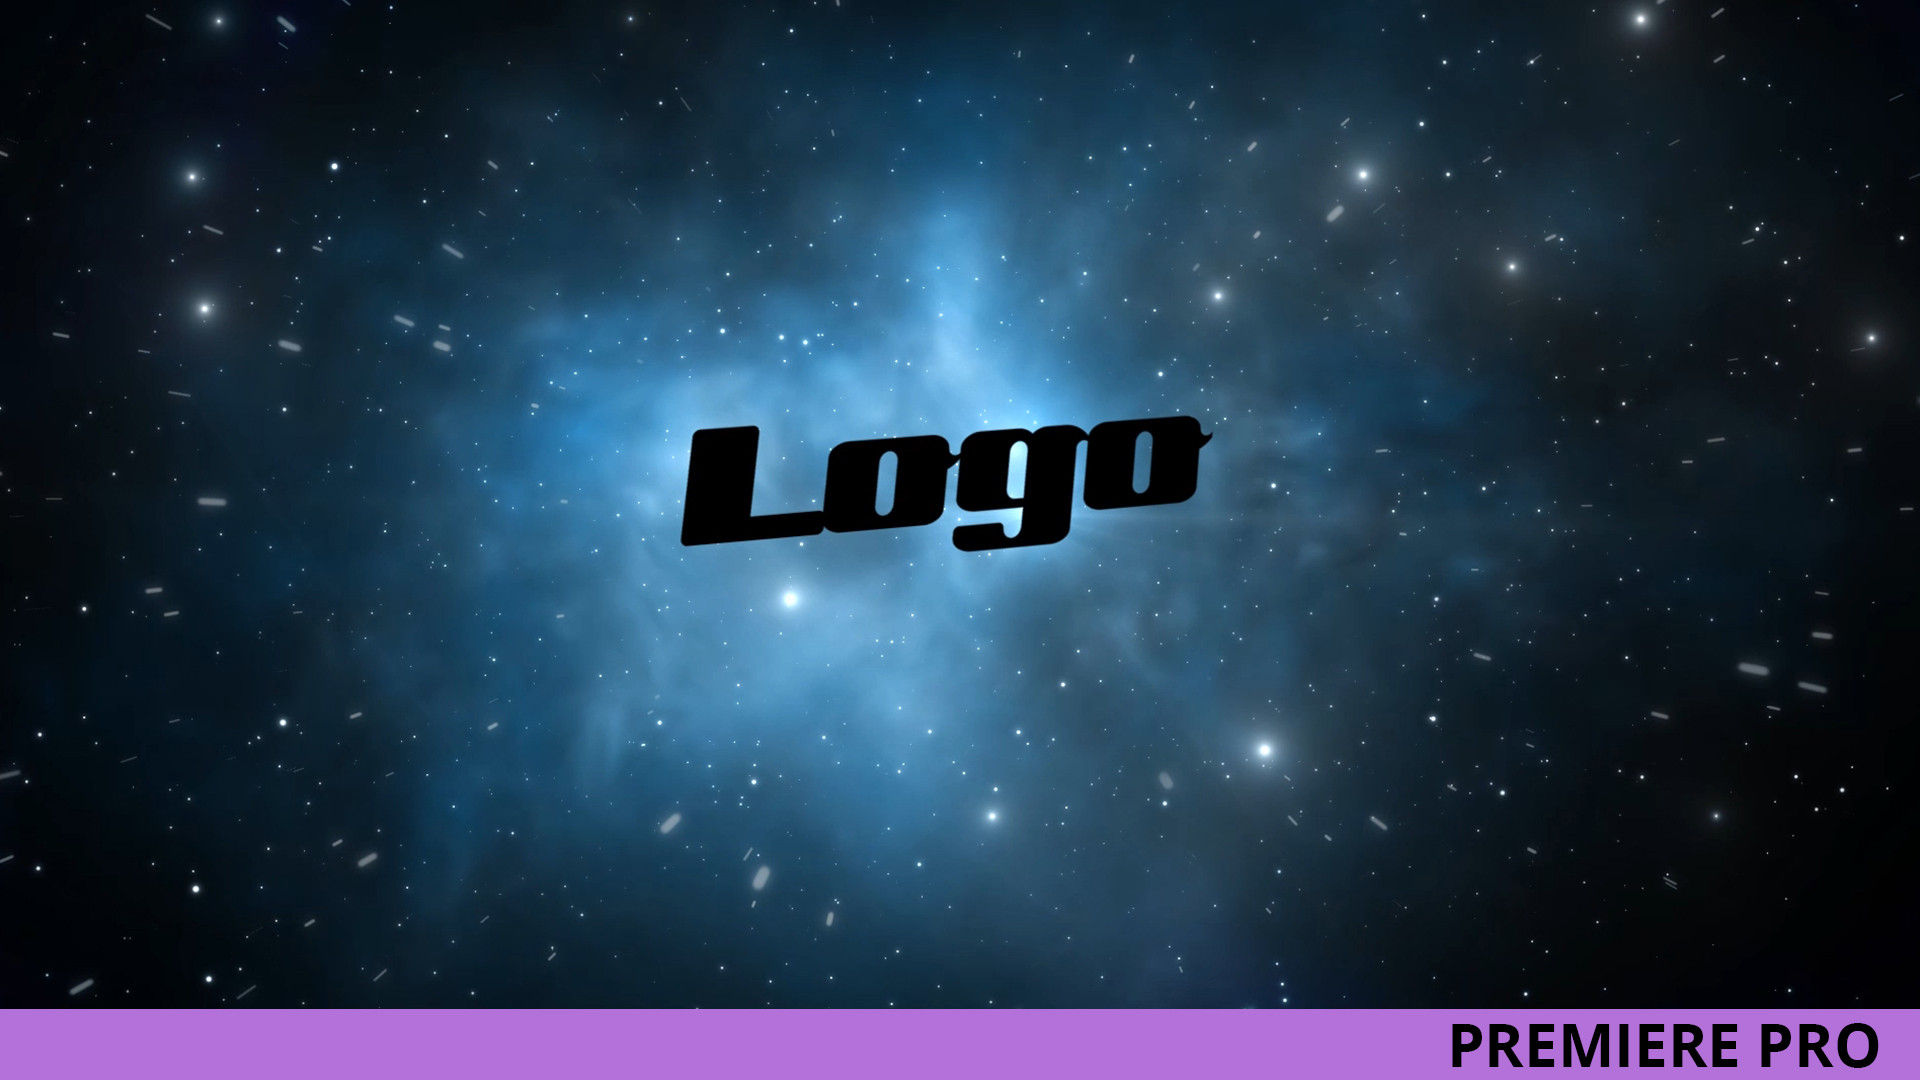 银河系太空标志LOGO展示普贤居推荐PR模板